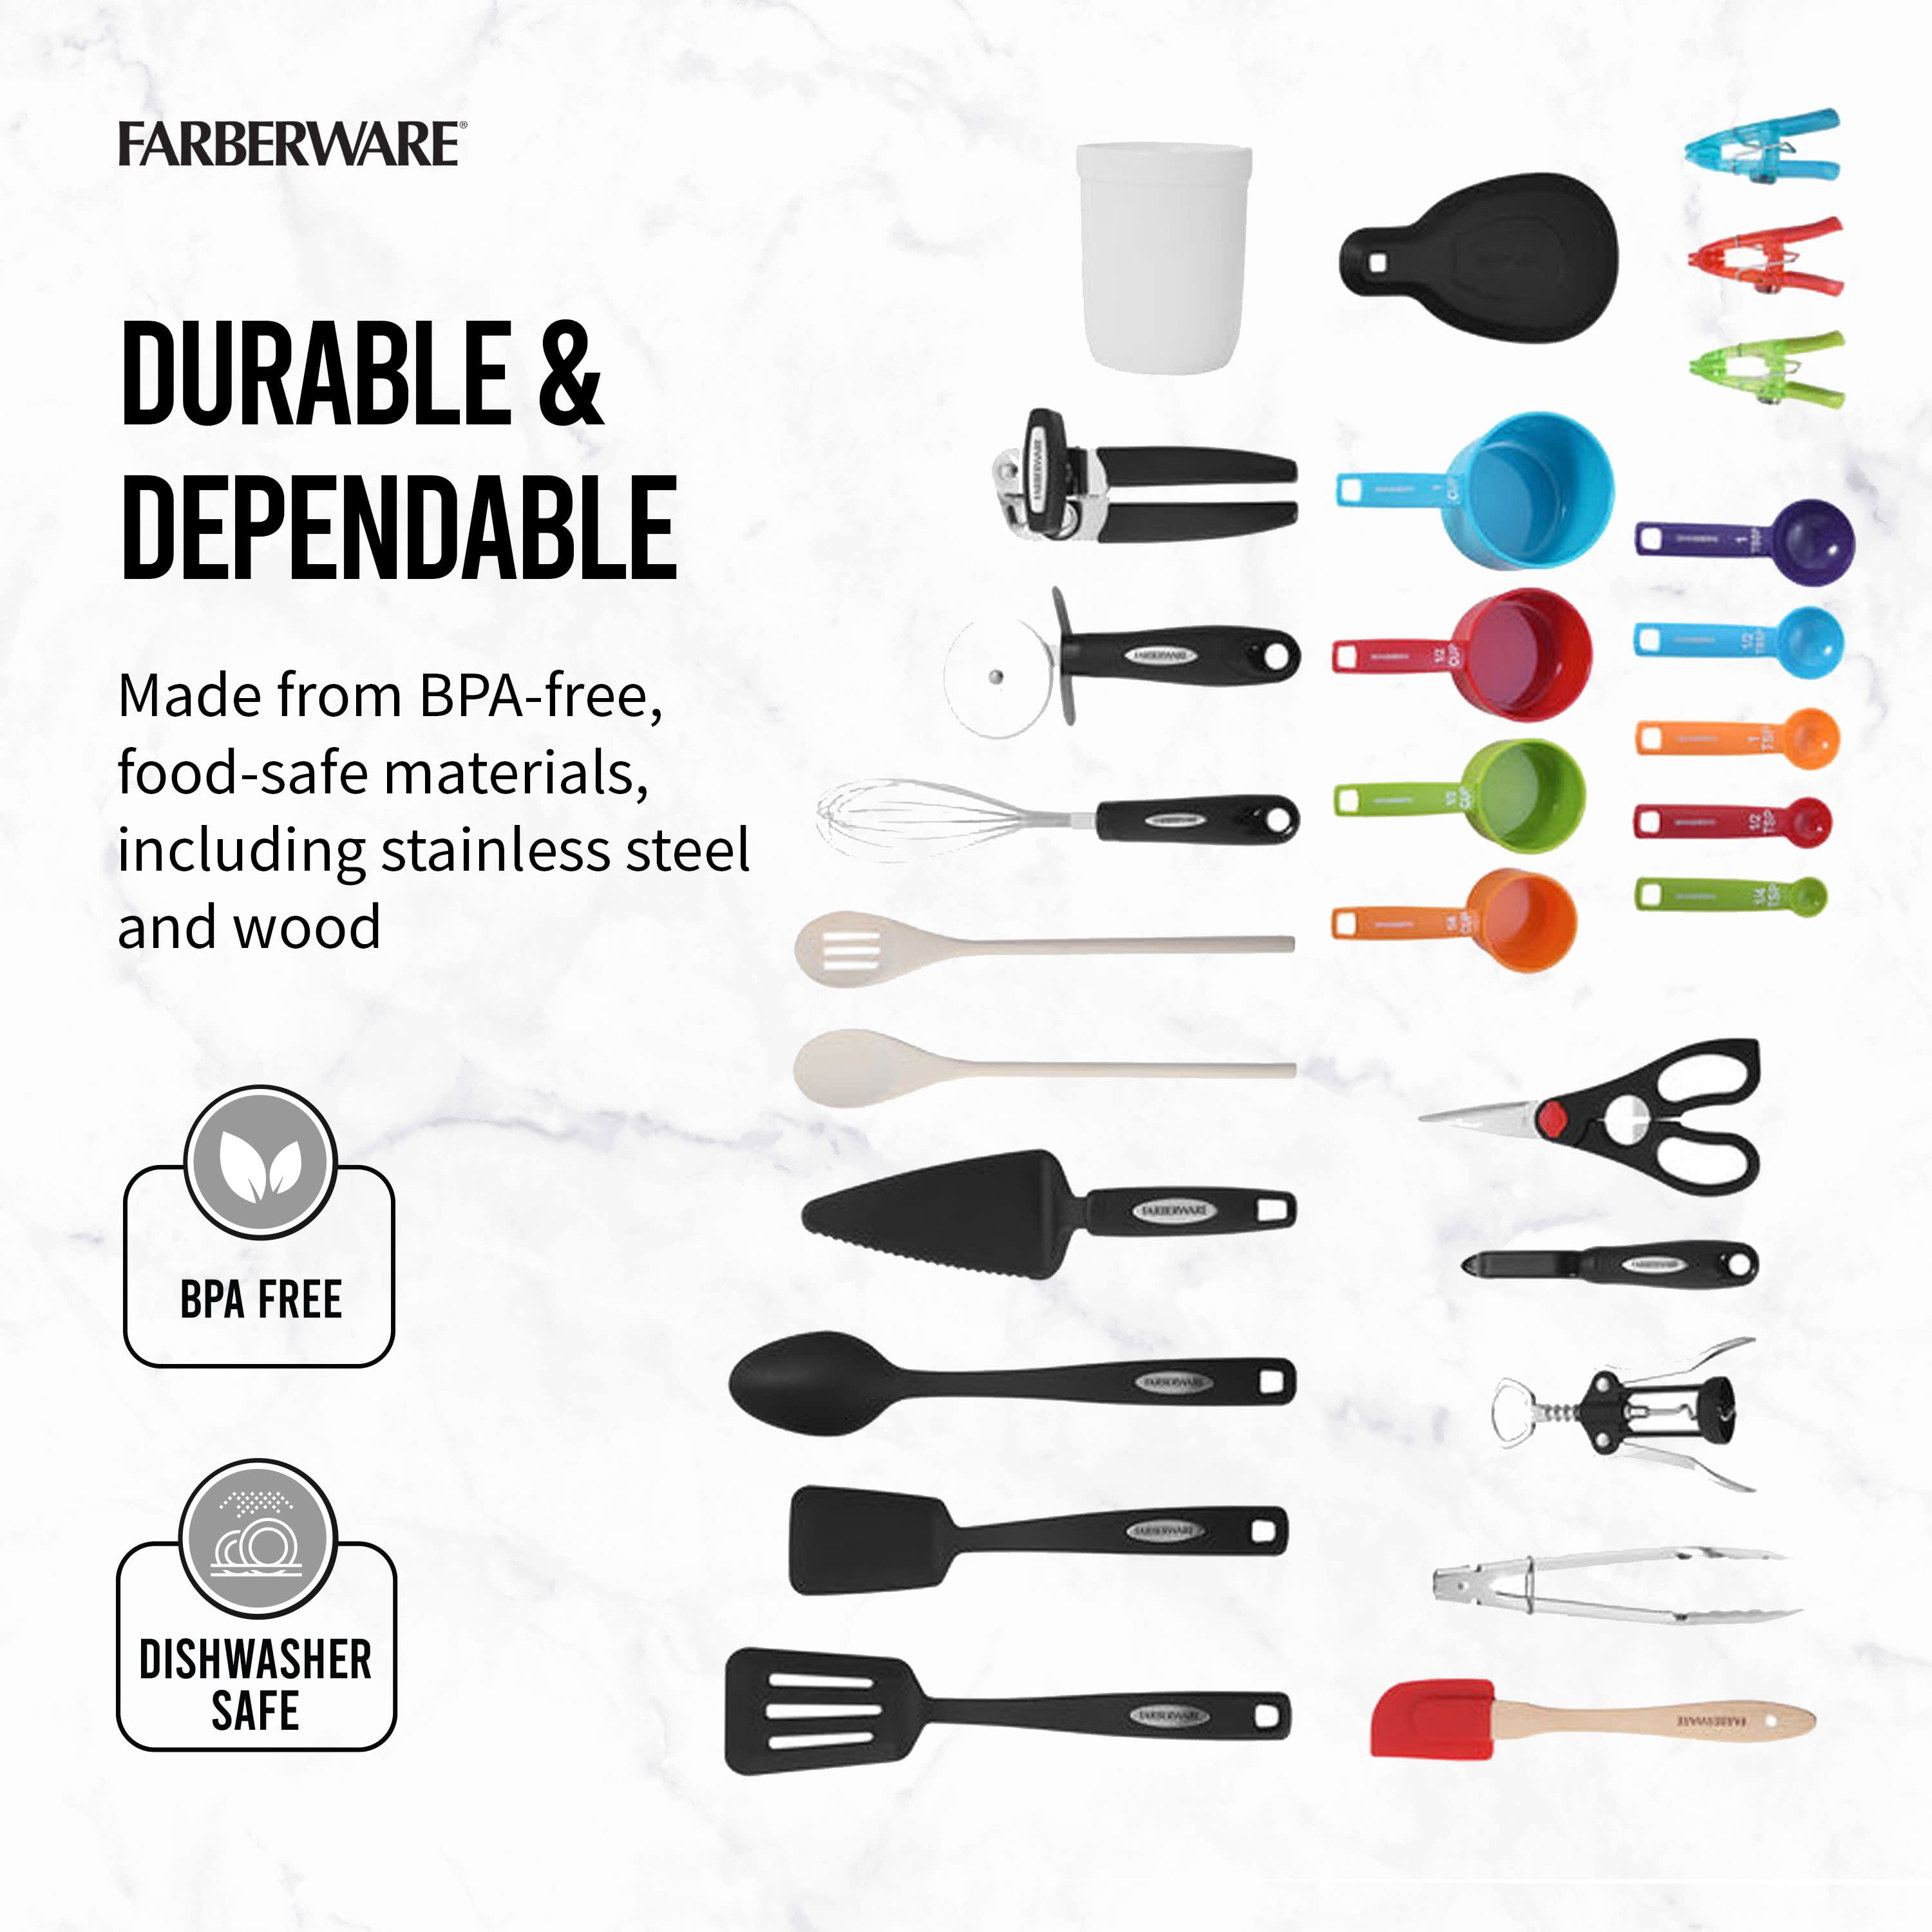 Farberware 28 Piece Kitchen Utensil and Gadget Set